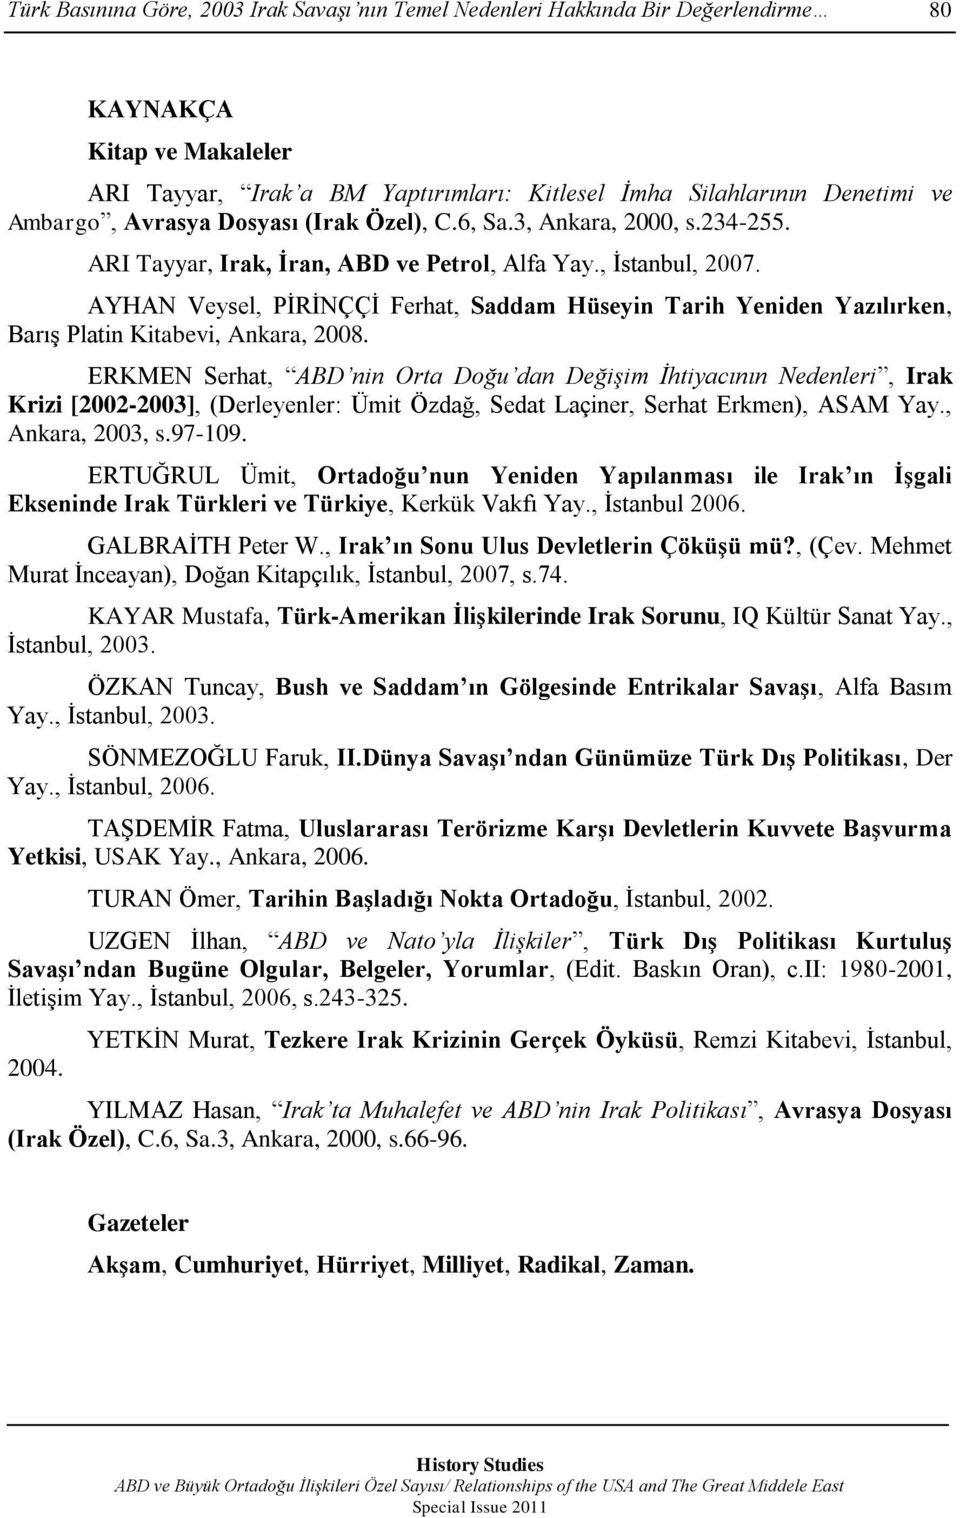 AYHAN Veysel, PĠRĠNÇÇĠ Ferhat, Saddam Hüseyin Tarih Yeniden Yazılırken, BarıĢ Platin Kitabevi, Ankara, 2008.